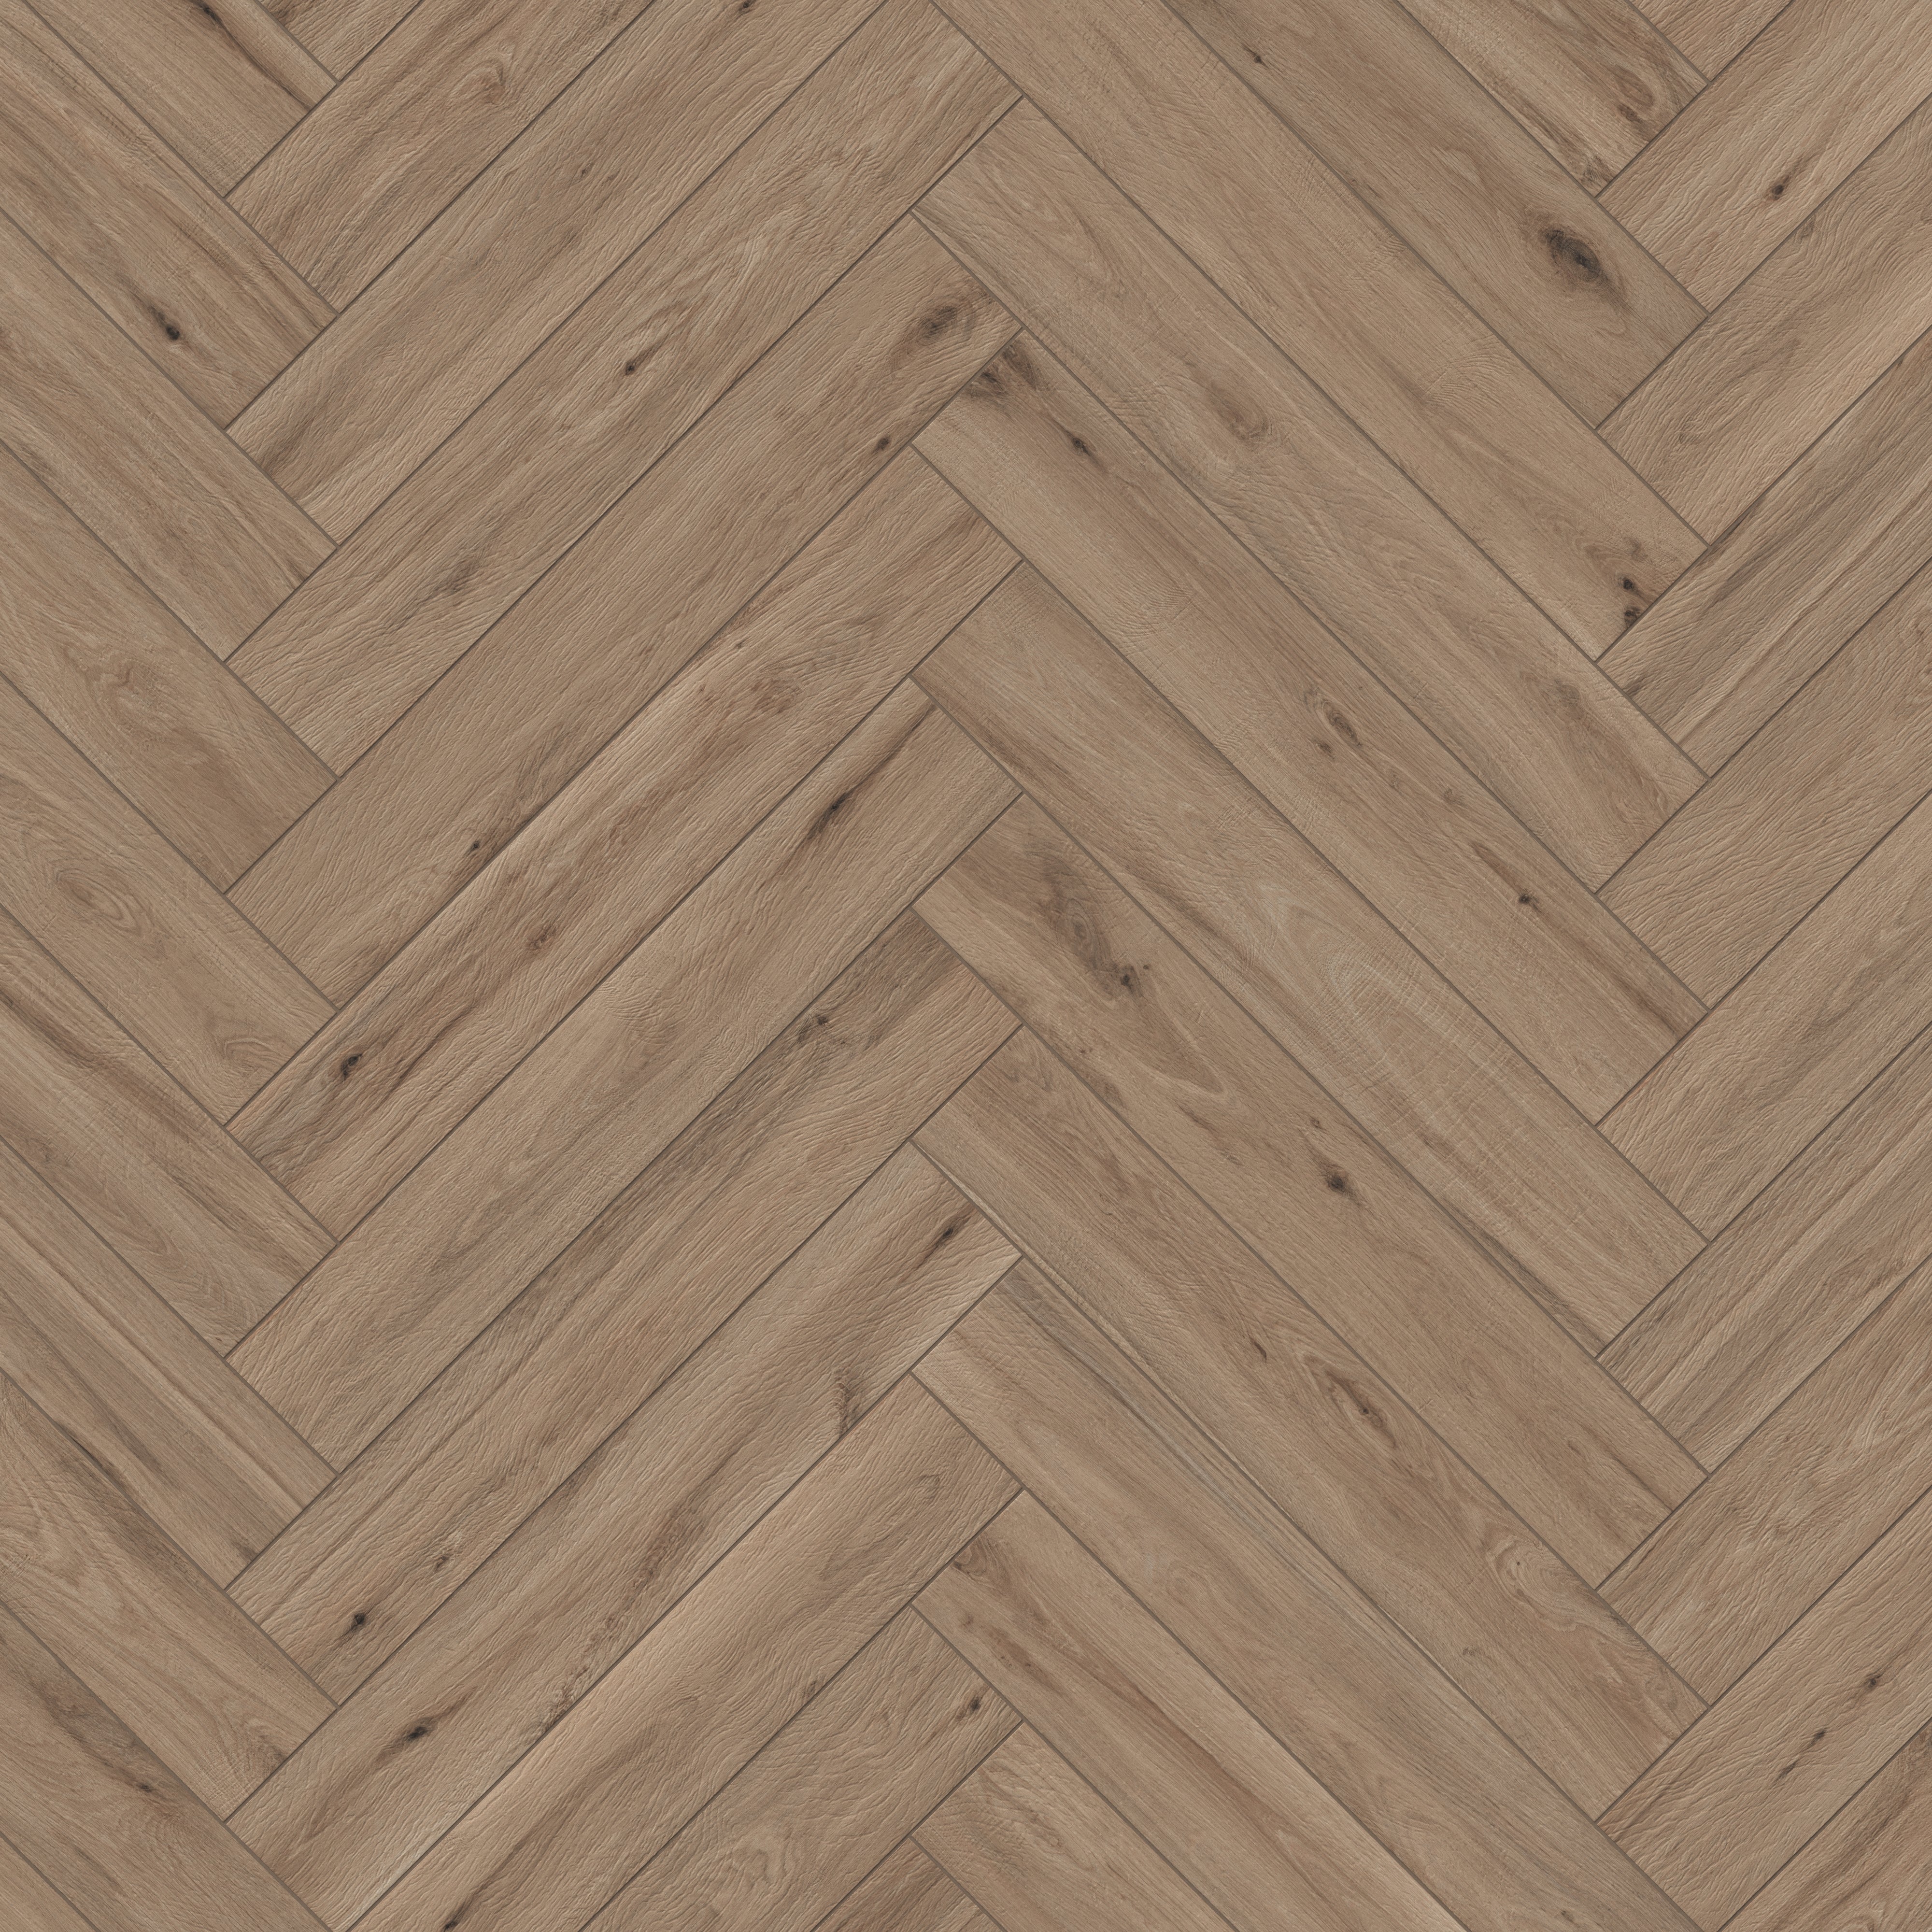 modern wooden floor tiles texture